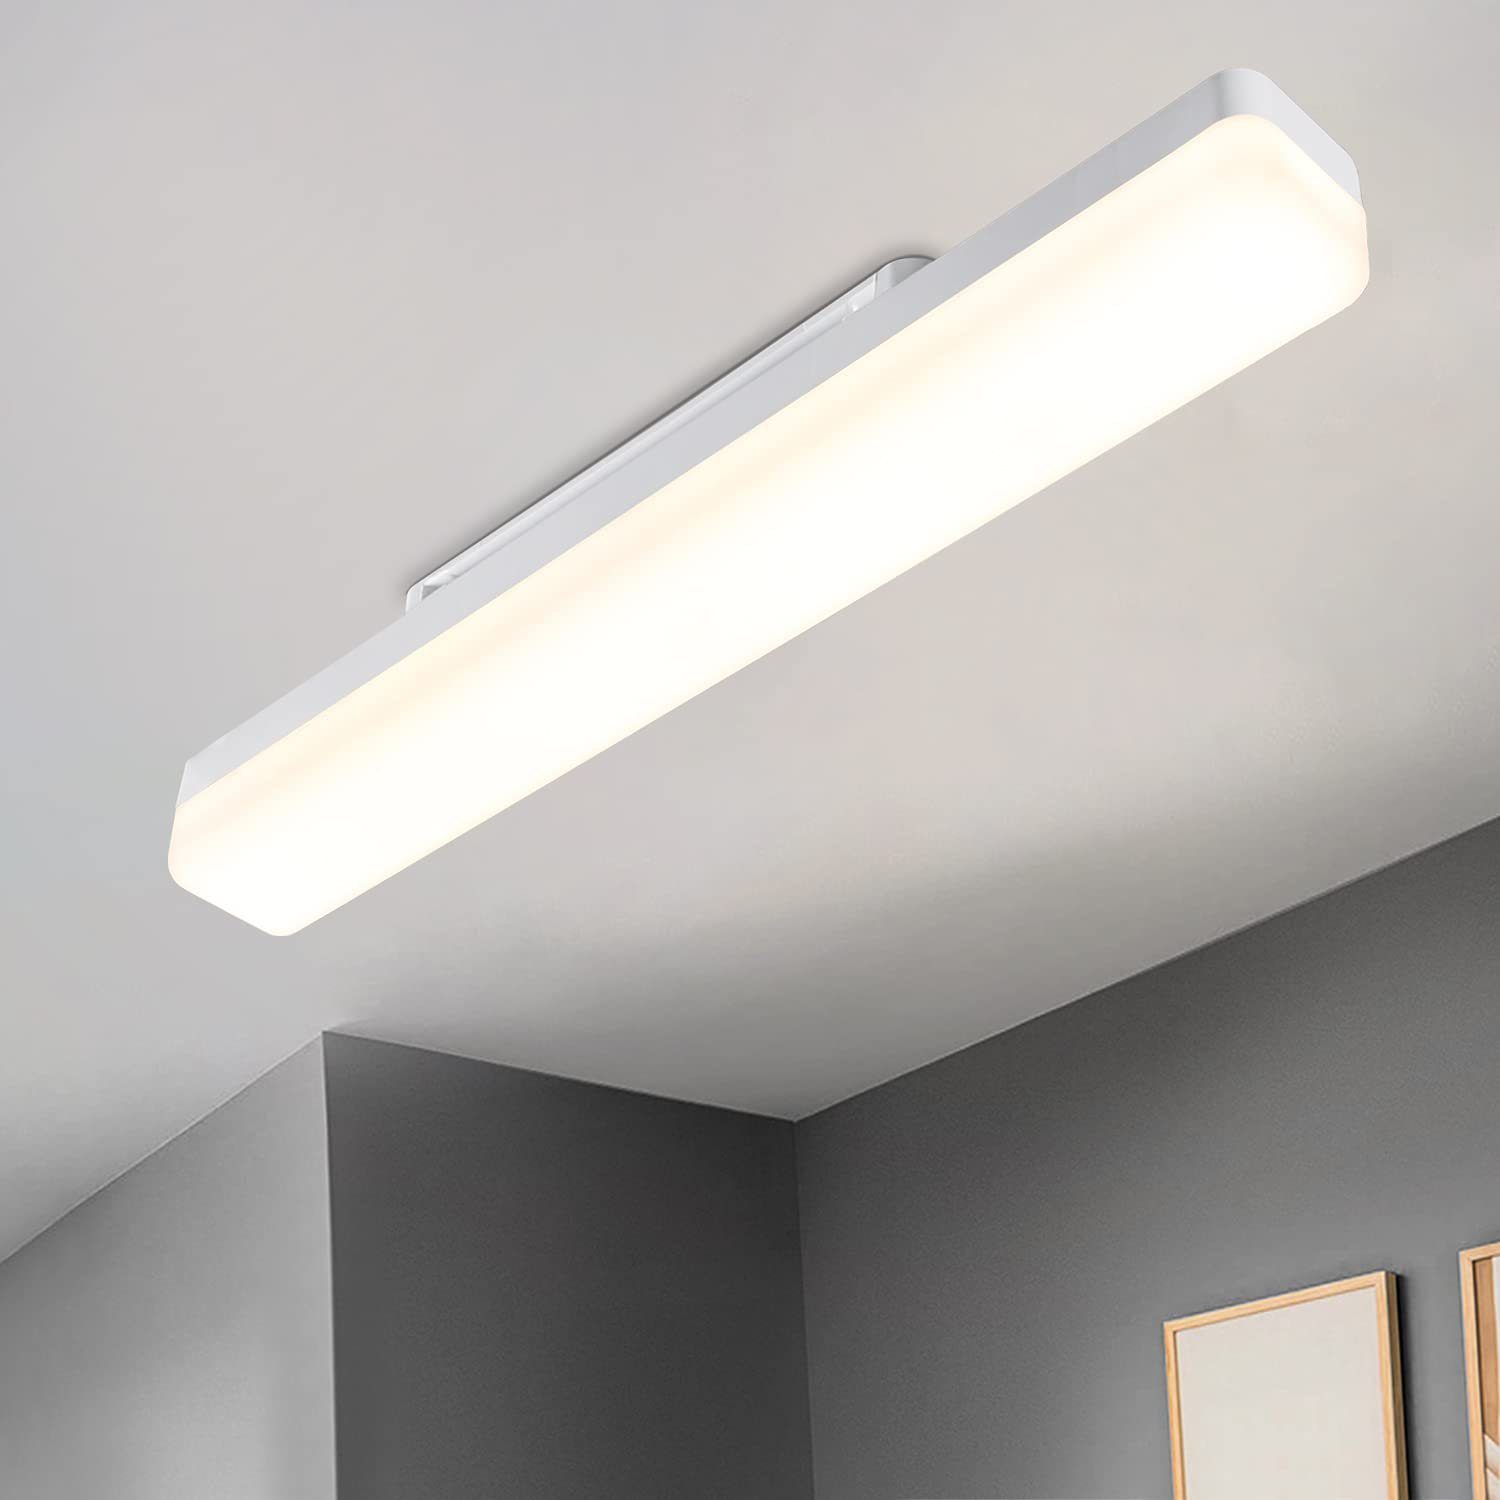 ZMH LED Deckenleuchte Modern Deckenlampe Tageslicht weiß Augenschutz für Schlafzimmer Flur, Einfache Installation, LED fest integriert, Tageslichtweiß, 18W Flurlampe, 4000K, für Keller Büro Garage